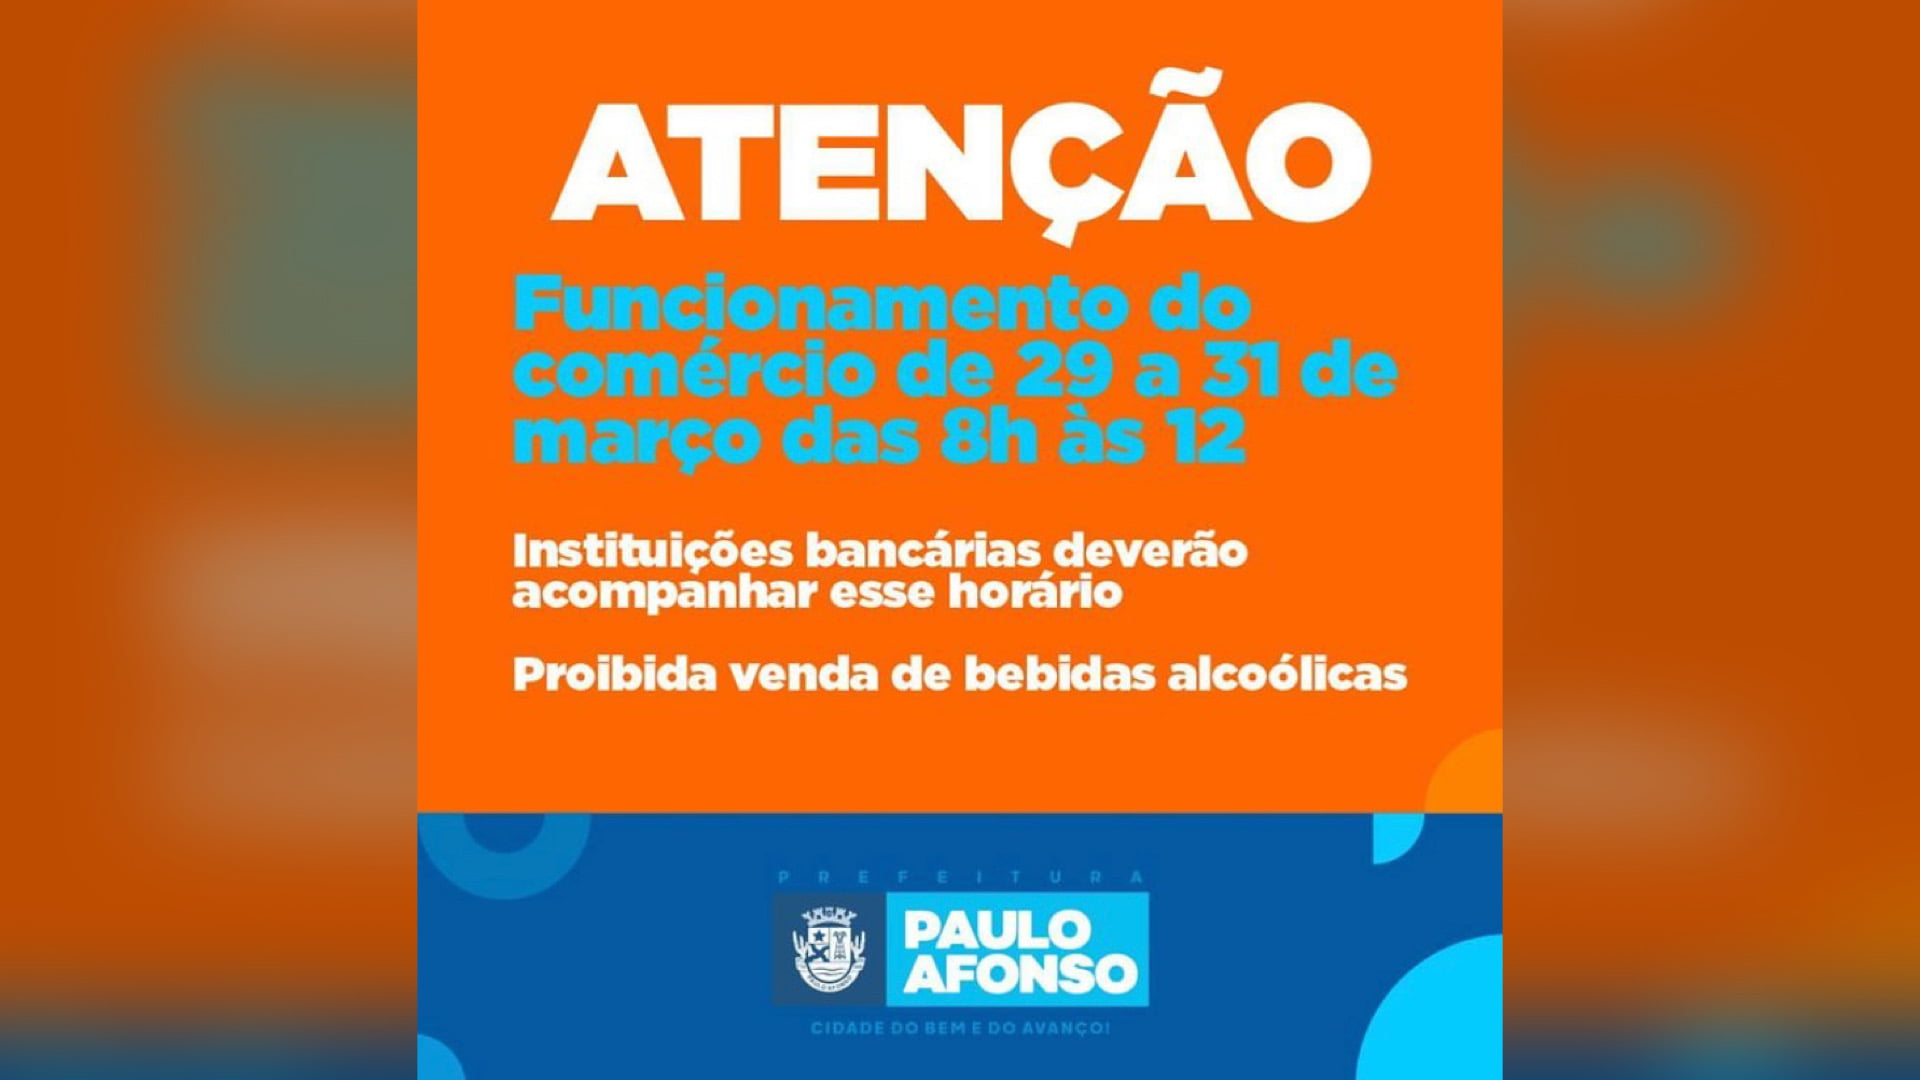 Paulo Afonso: Comércio E Bancos Poderão Funcionar Dias 29, 30 E 31 De Março, Das 8H Às 12H